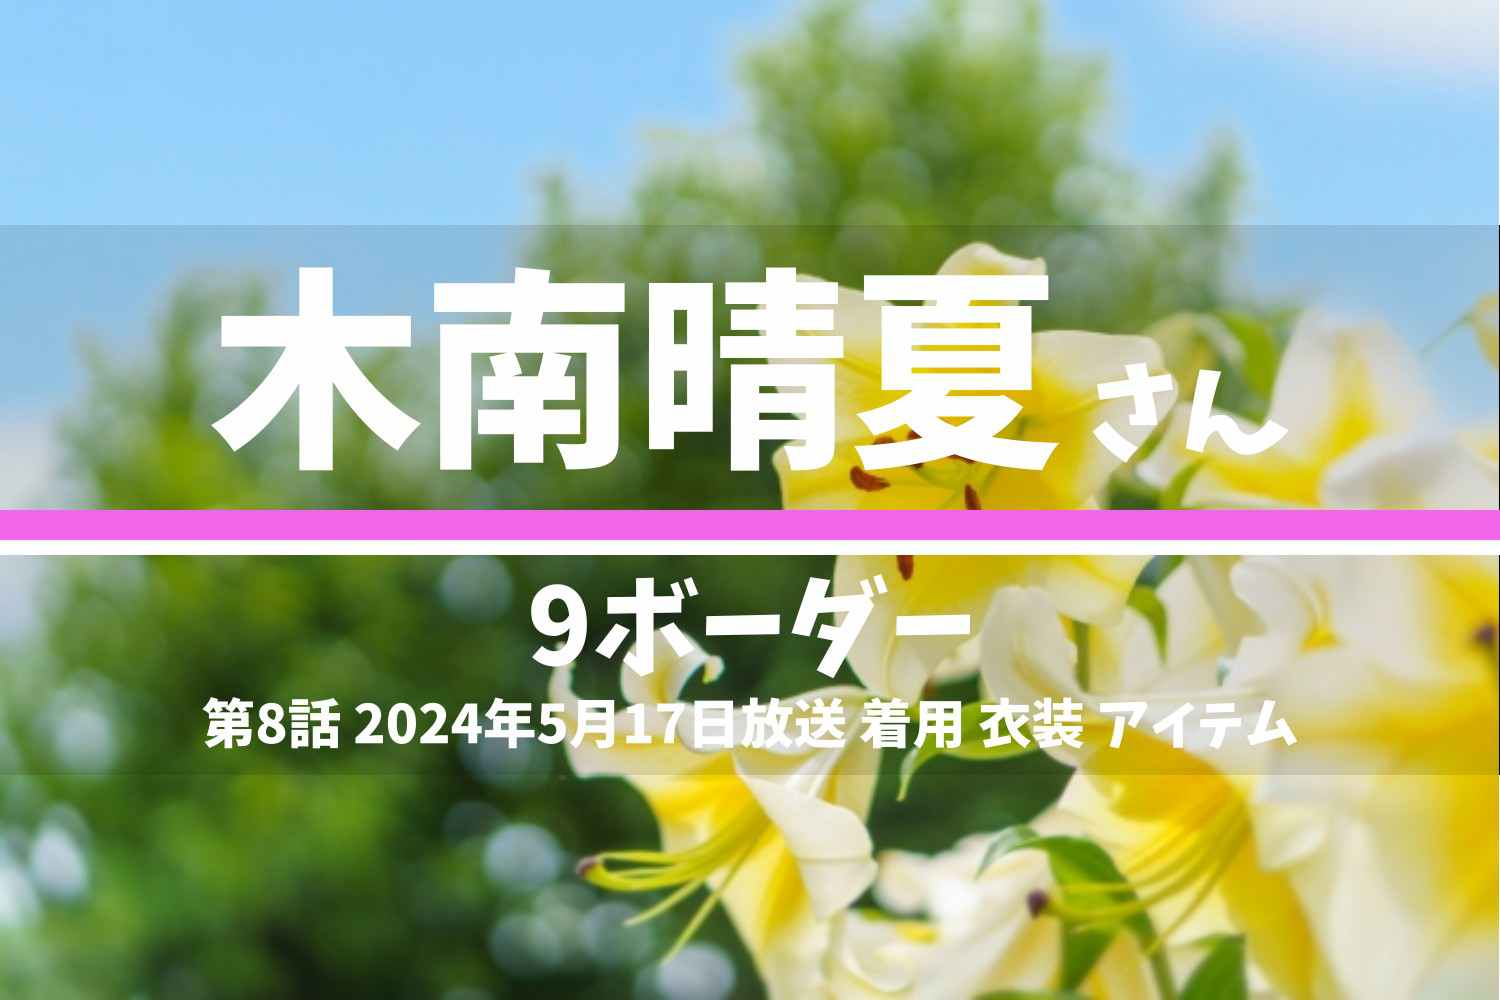 9ボーダー 木南晴夏さん テレビドラマ 衣装 2024年5月17日放送